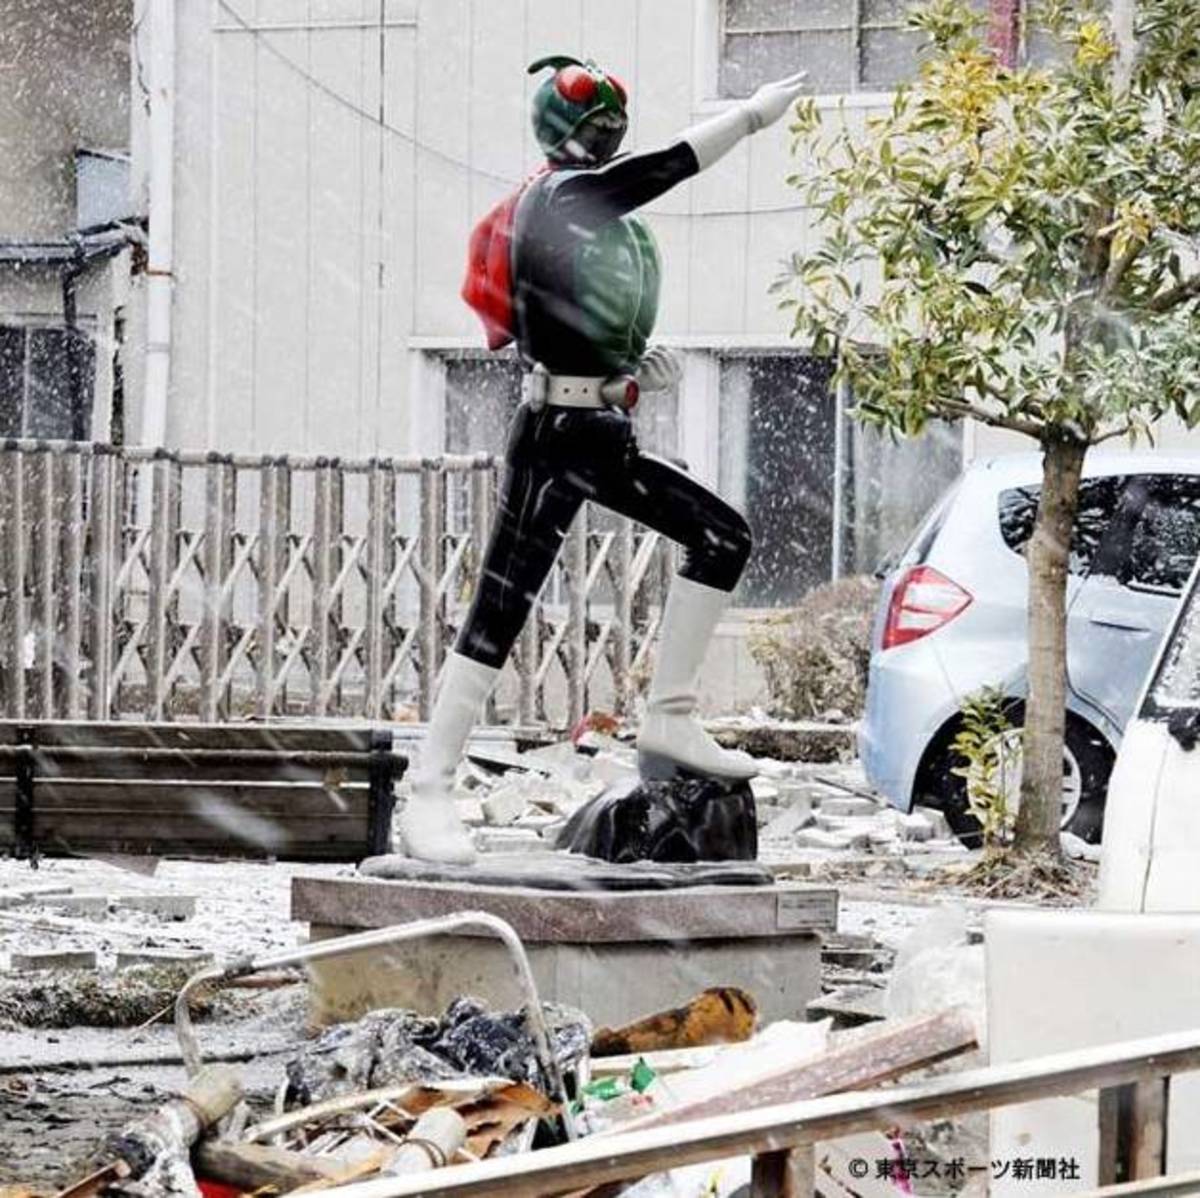 Kamen Rider: Japan's Symbol of Hope